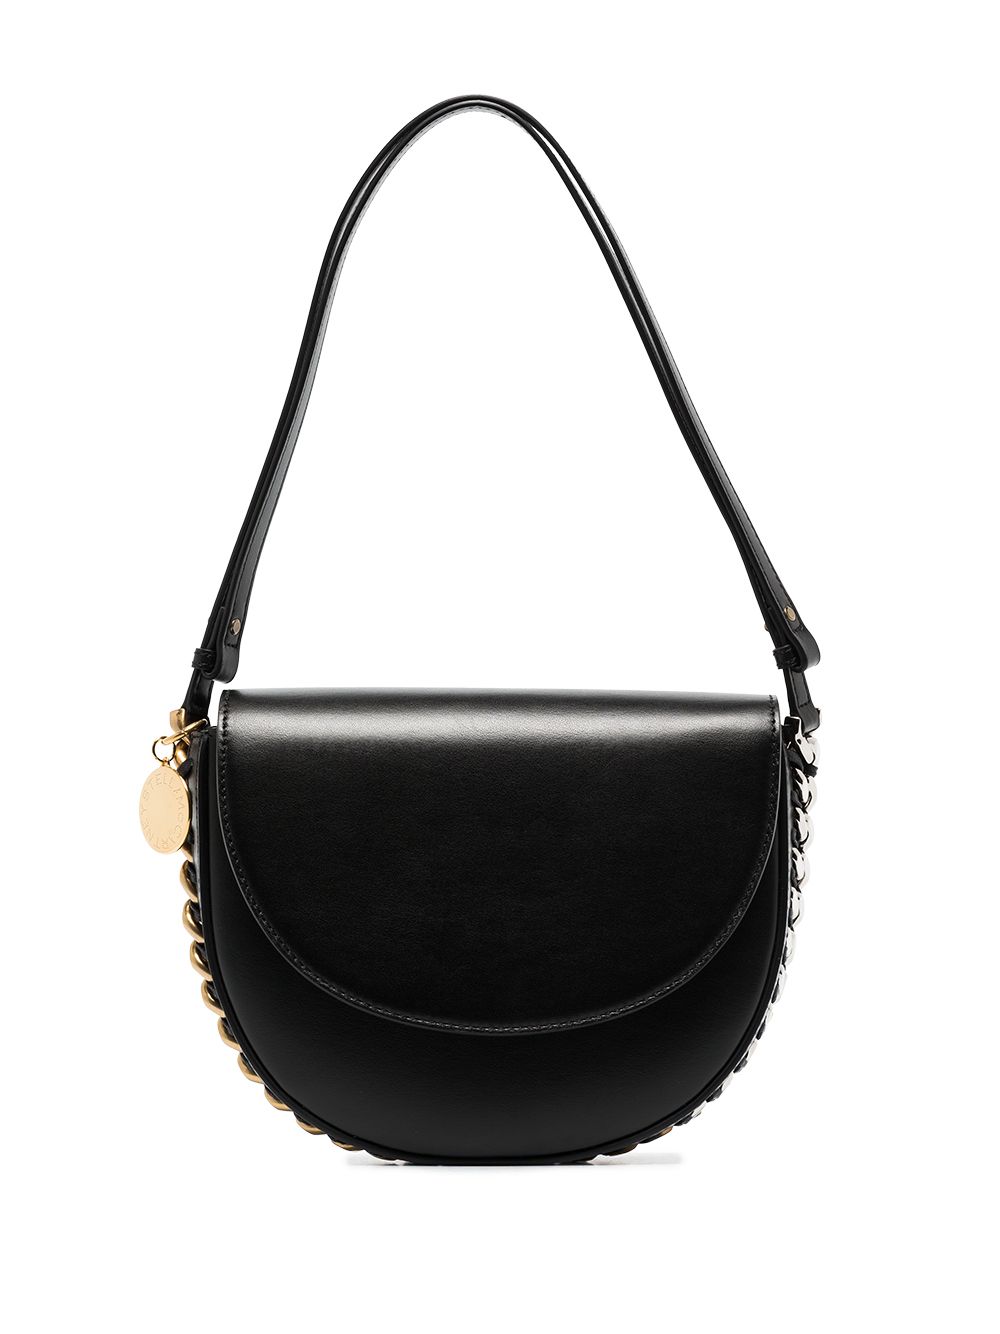 Stella McCartney medium Frayme shoulder bag - Black